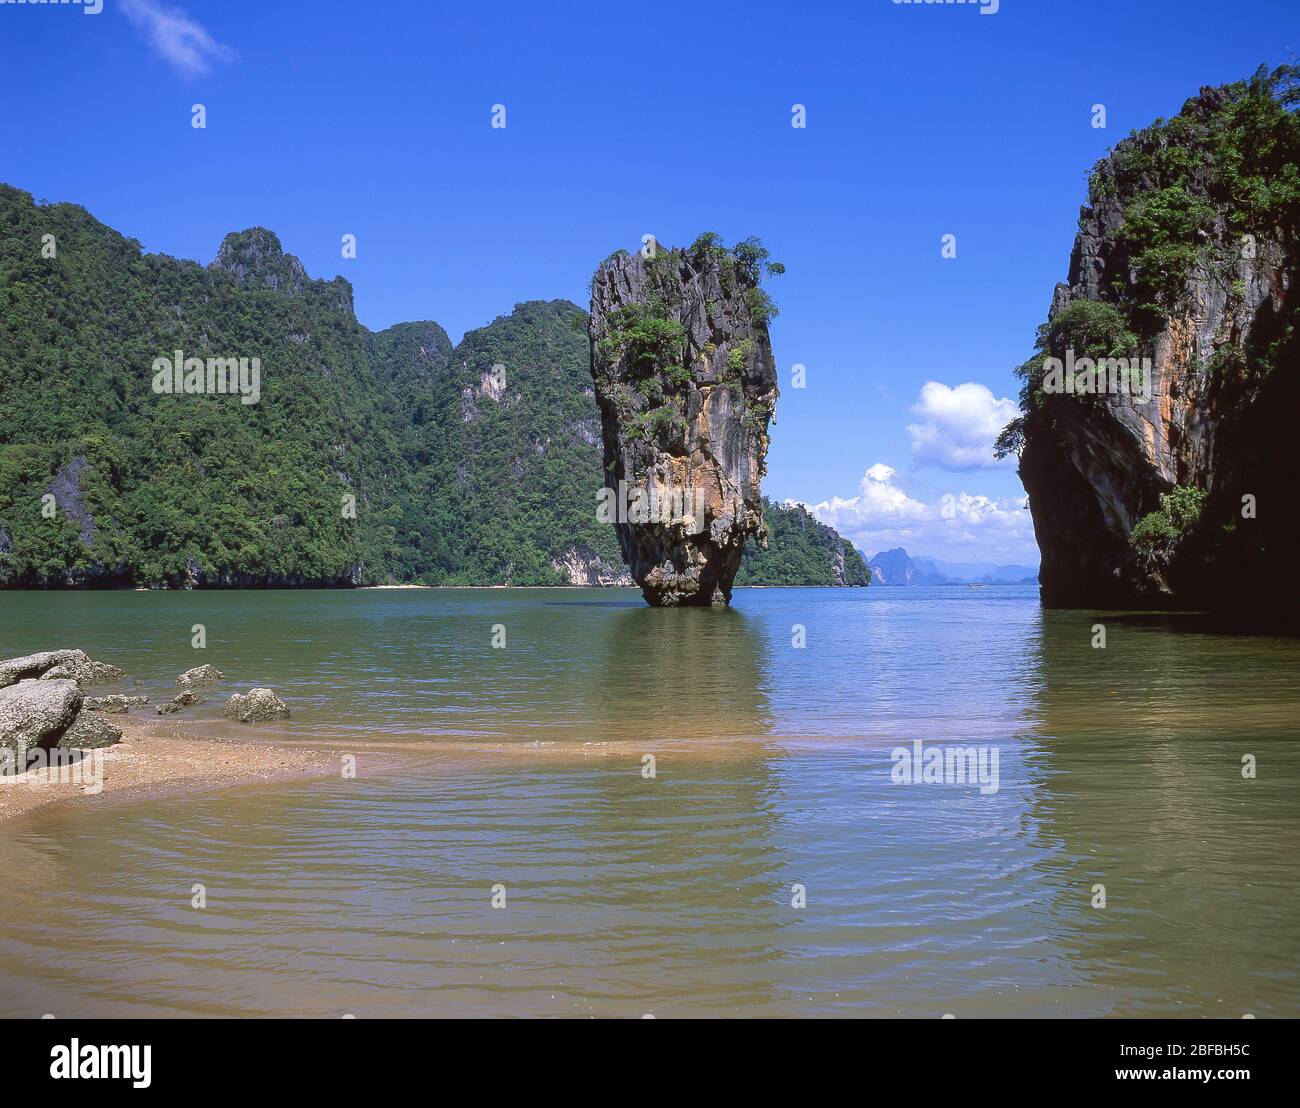 Ko Tapu (James Bond) Island, Ao Phang Nga National Park, Ko Ping Kan, Phang Nga Province, Thailand Stock Photo